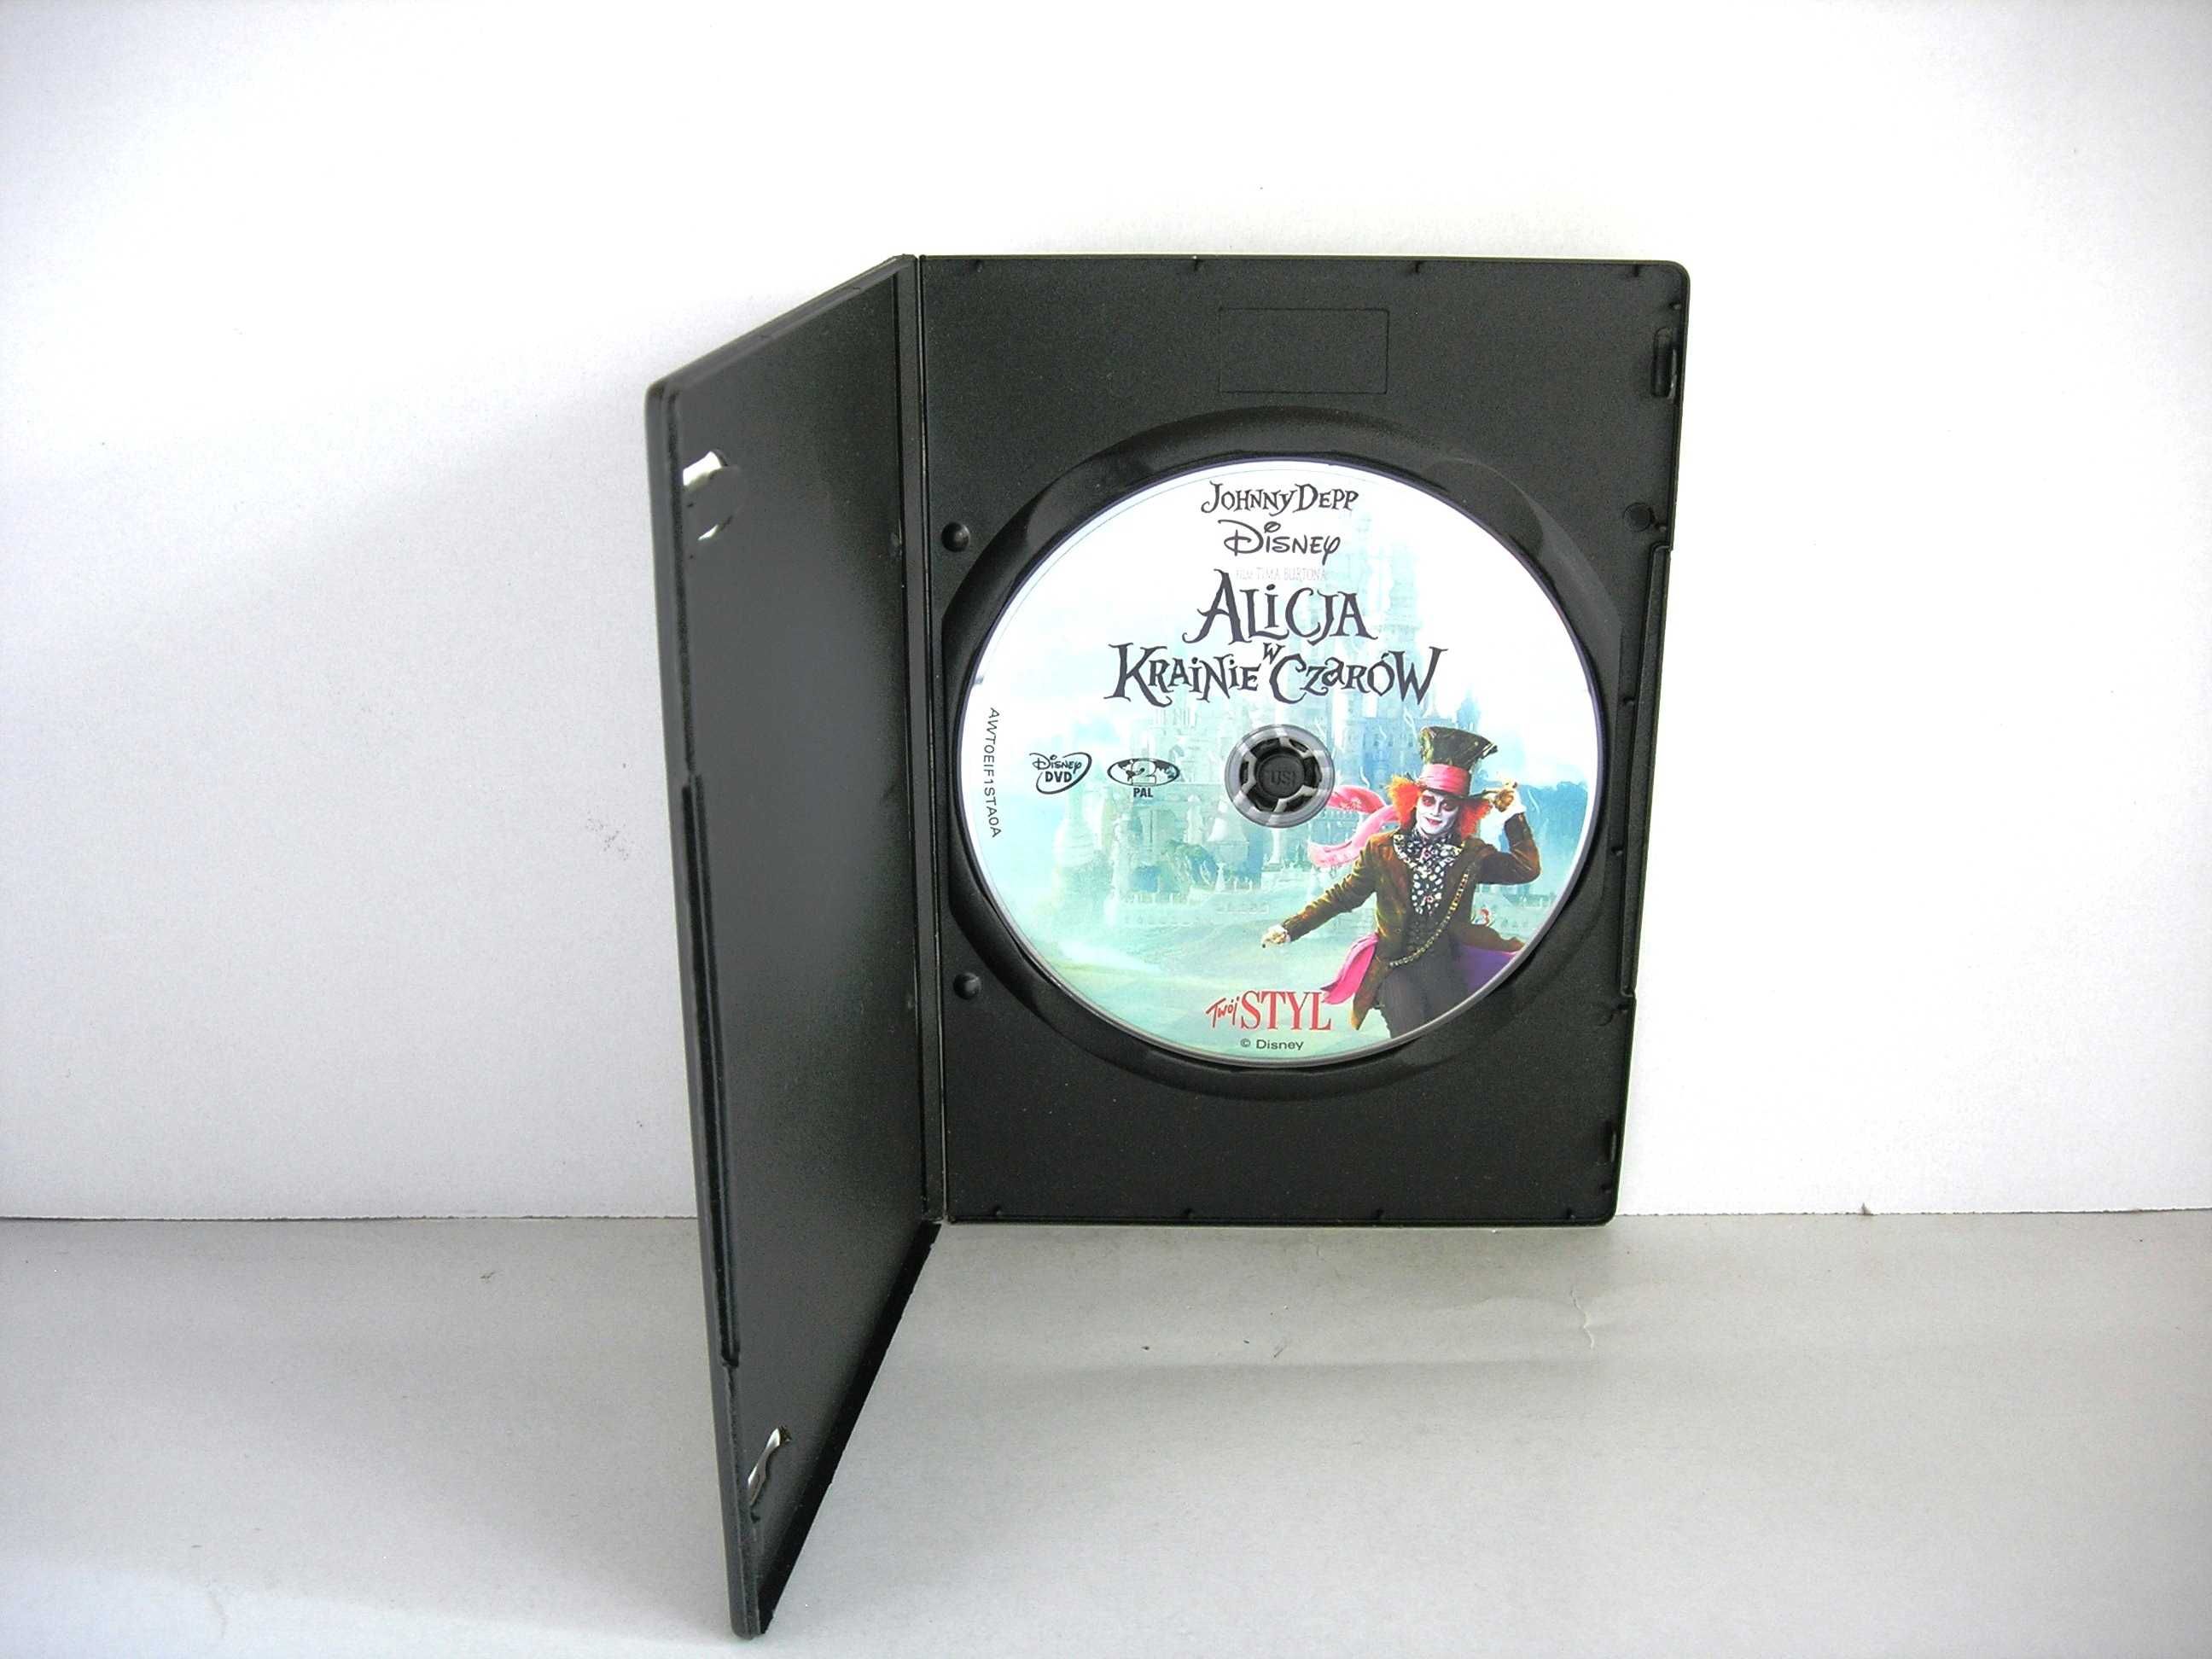 "Alicja w krainie czarów" DVD Tim Burton Disney 2010